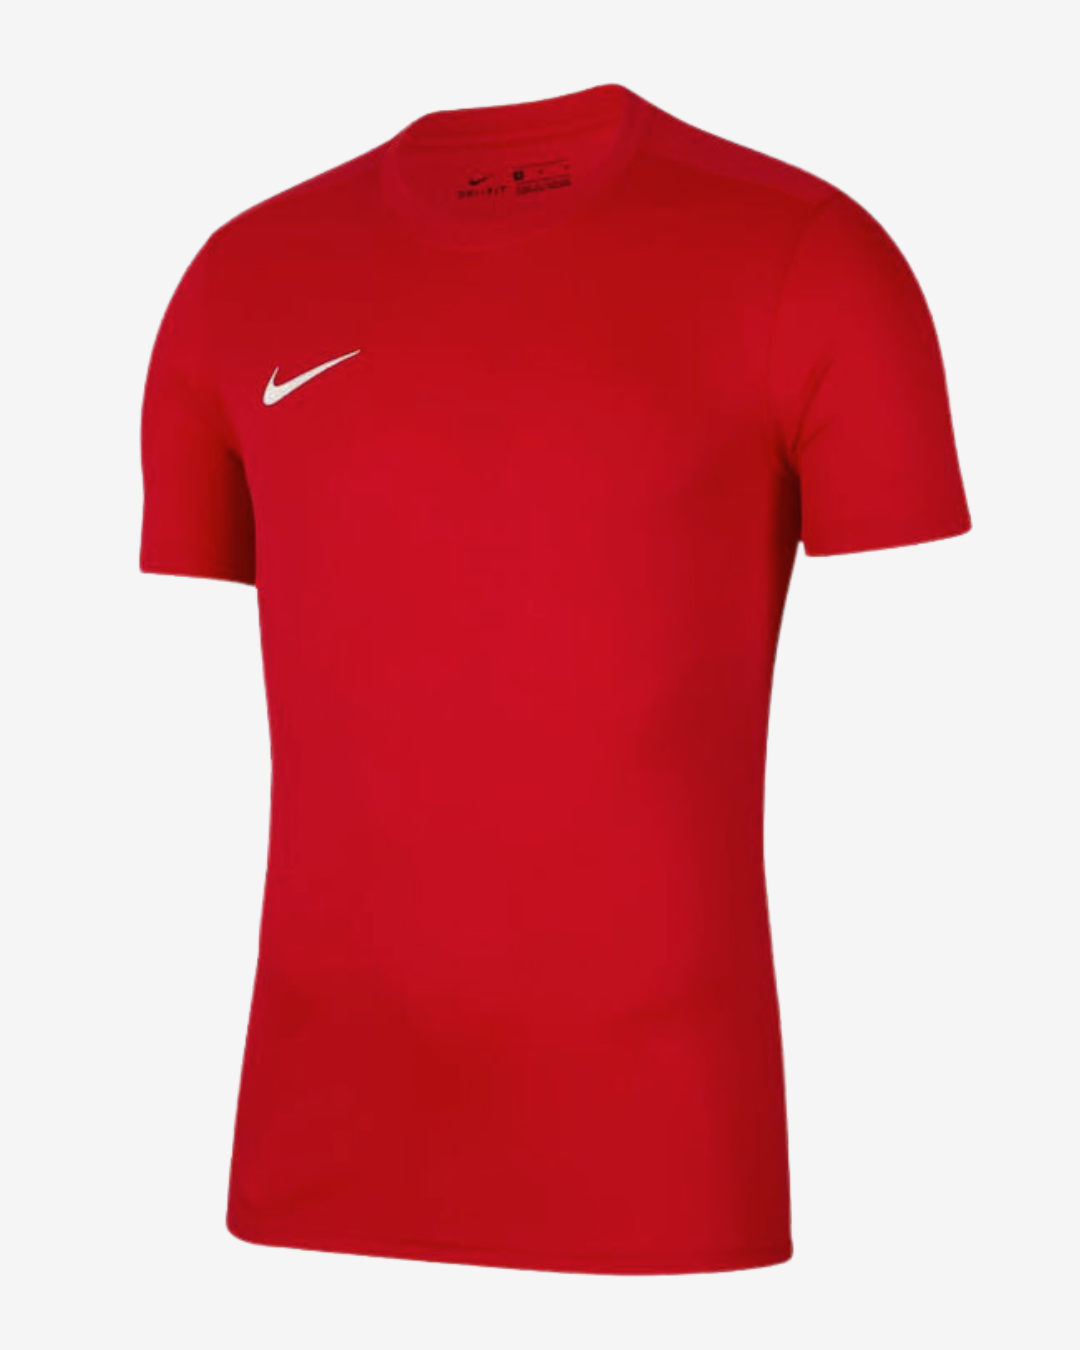 Billede af Nike Dri-fit park 7 t-shirt - Rød - Str. S - Modish.dk